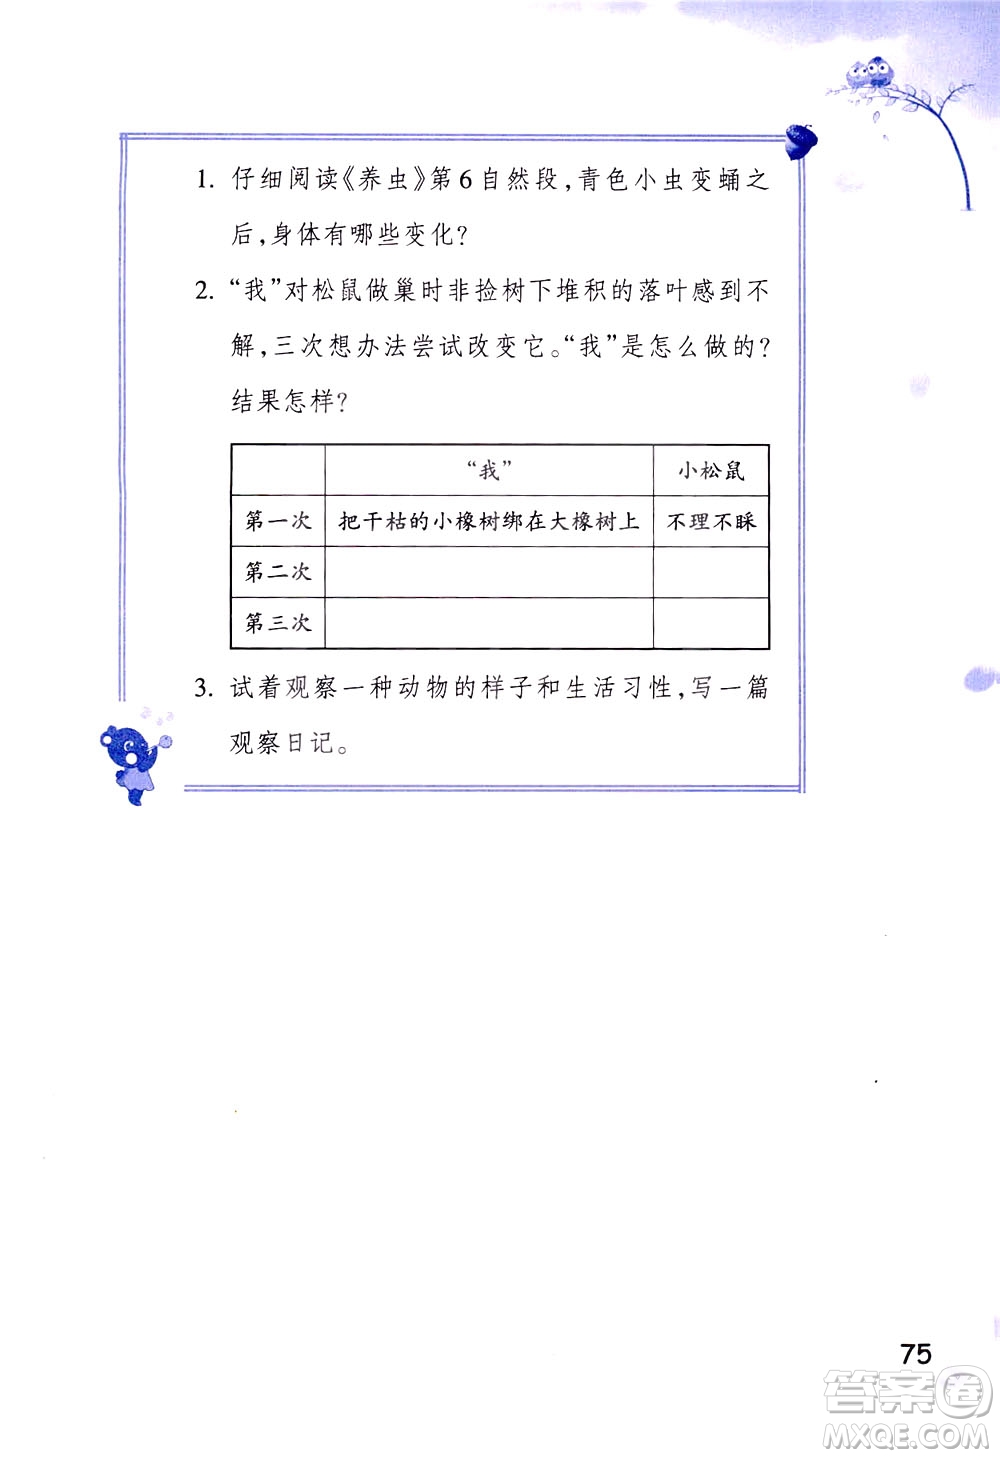 浙江教育出版社2021小学语文同步阅读升级版三年级下册答案